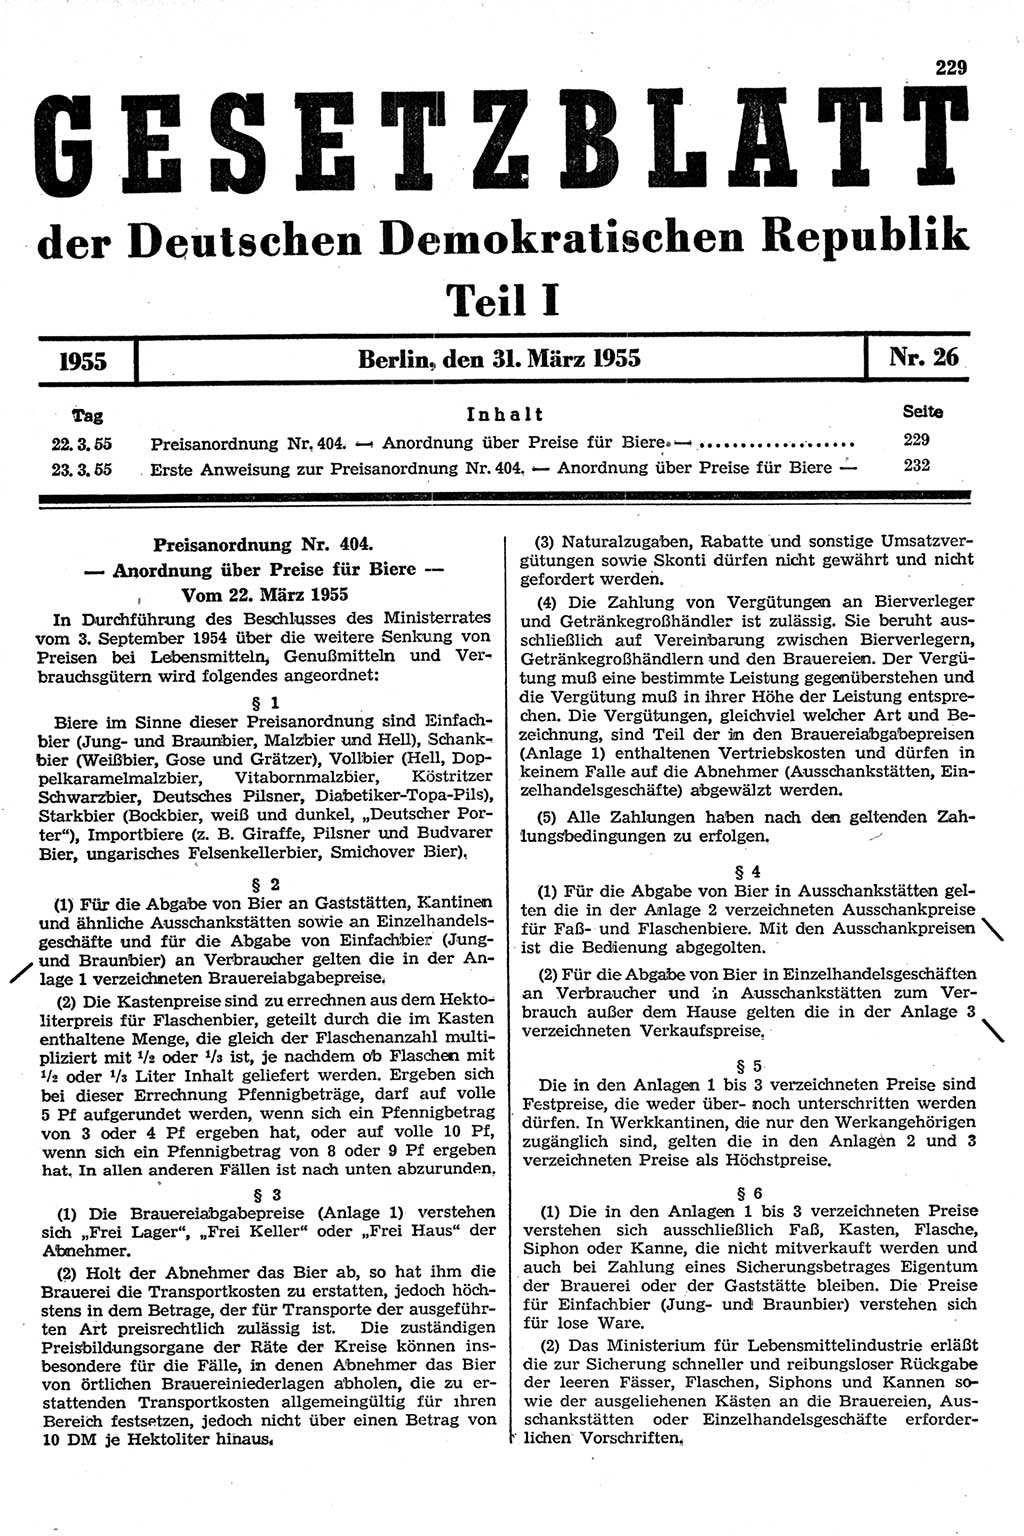 Gesetzblatt (GBl.) der Deutschen Demokratischen Republik (DDR) Teil Ⅰ 1955, Seite 229 (GBl. DDR Ⅰ 1955, S. 229)